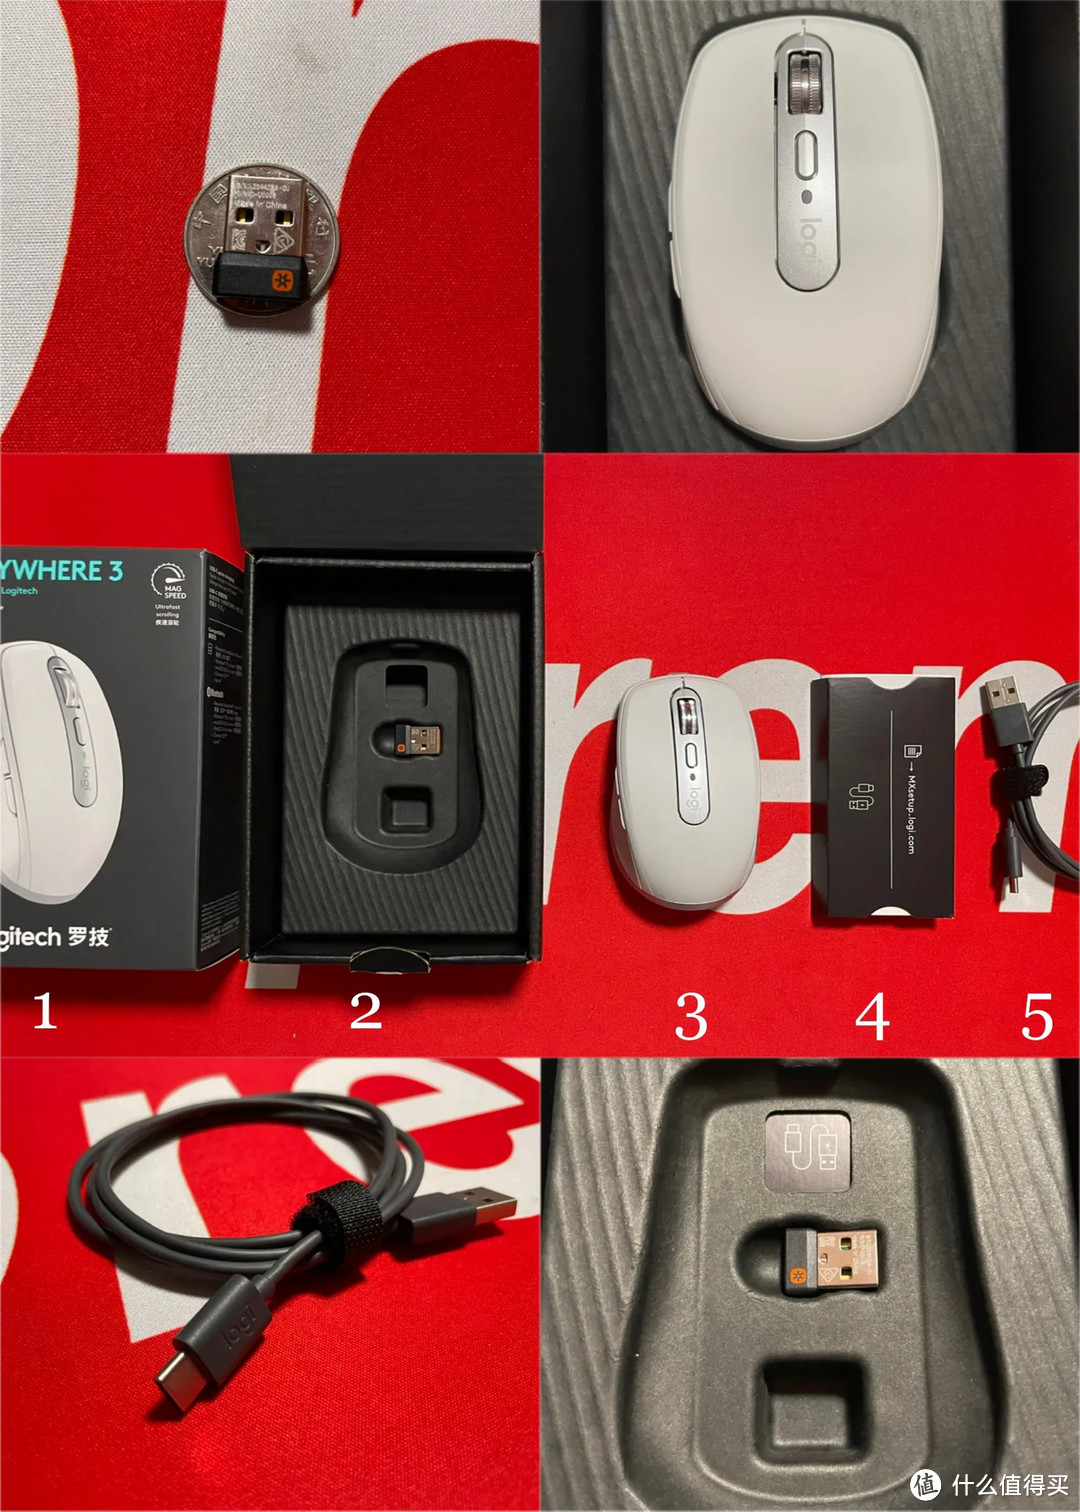 1、外包装；2、内包装+USB适配器；3、鼠标本体；4、说明书；5、数据线